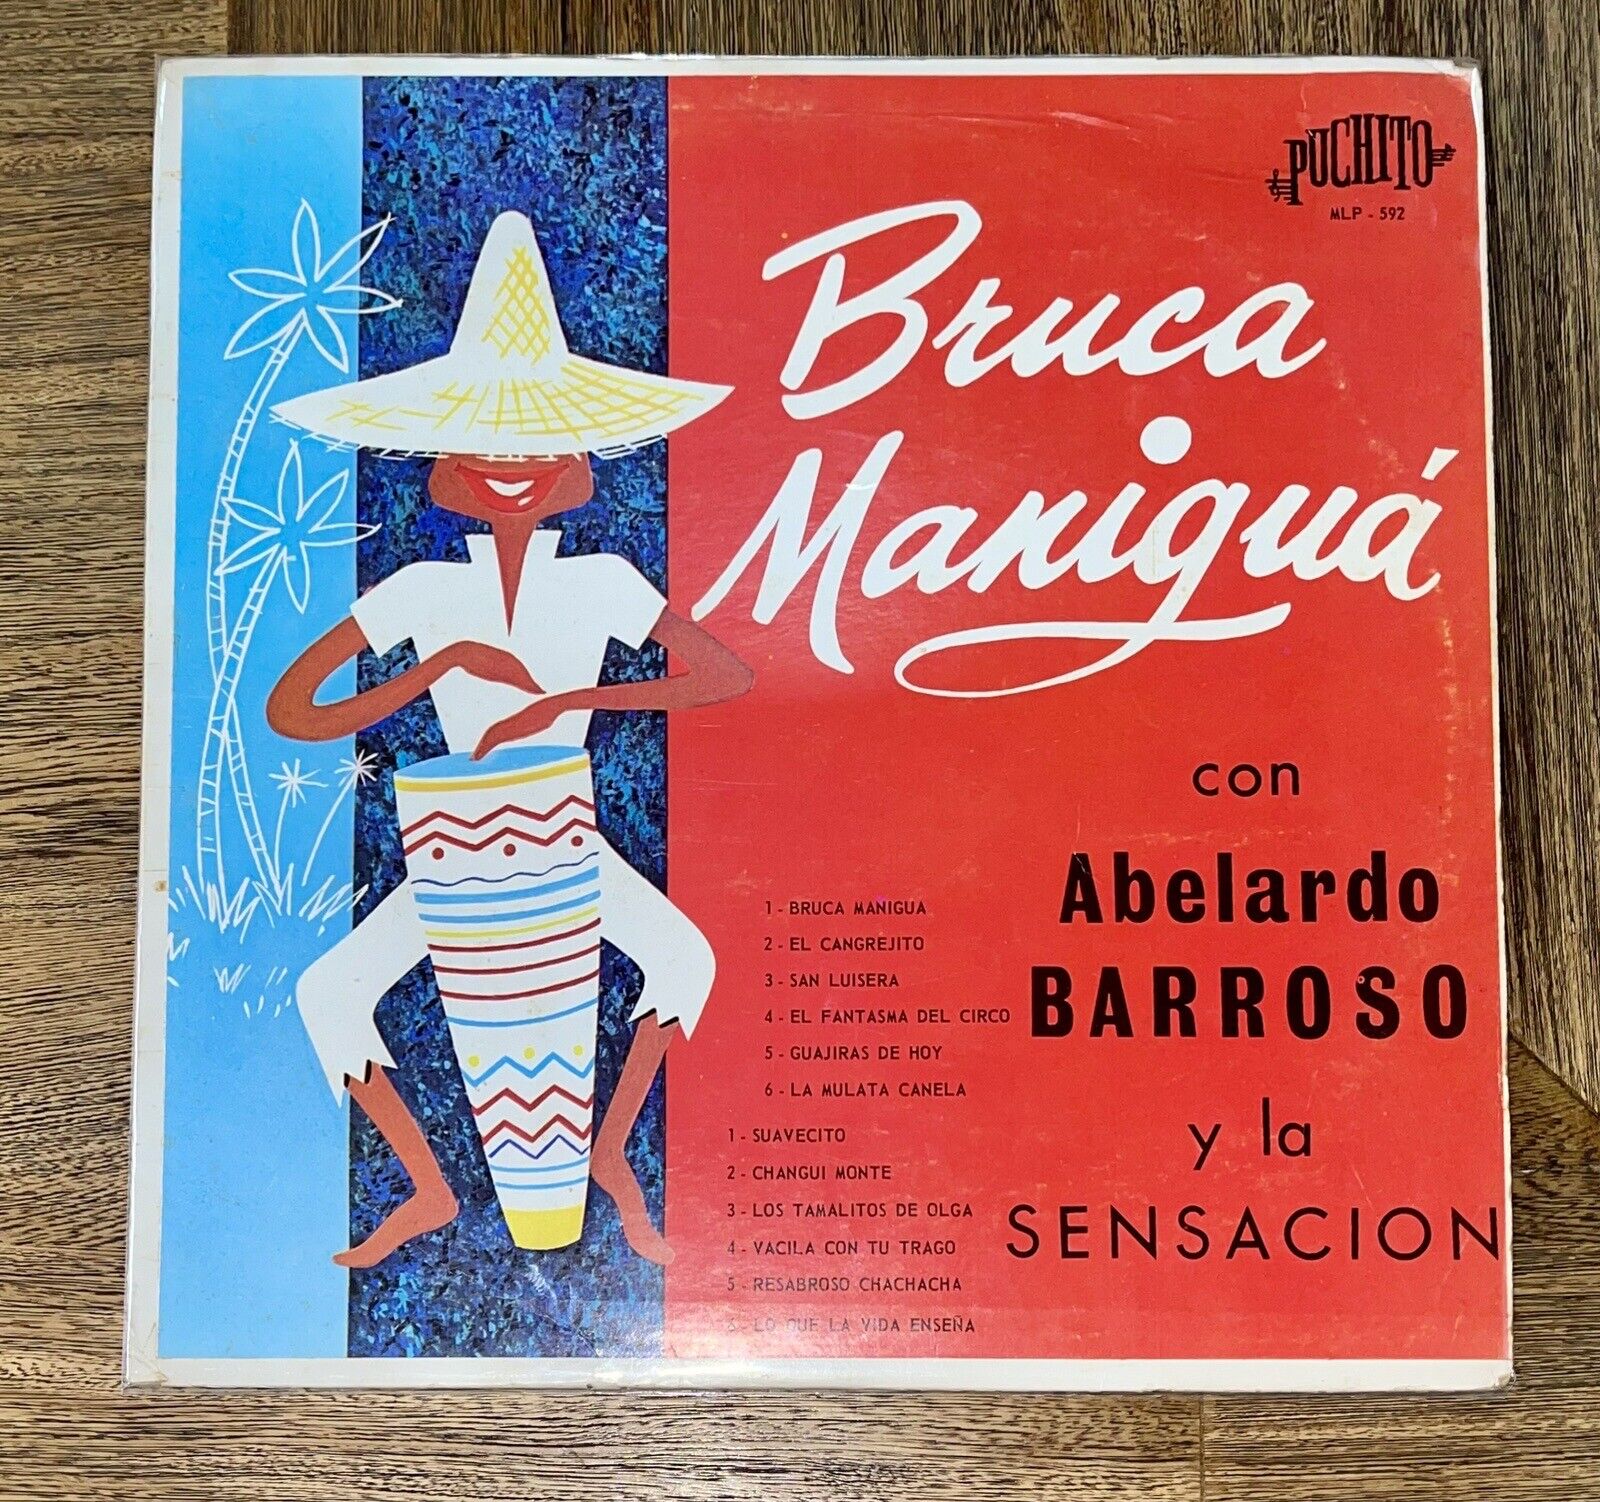 Abelardo Barroso Y La Sensación - Bruca Manigua - Puchito